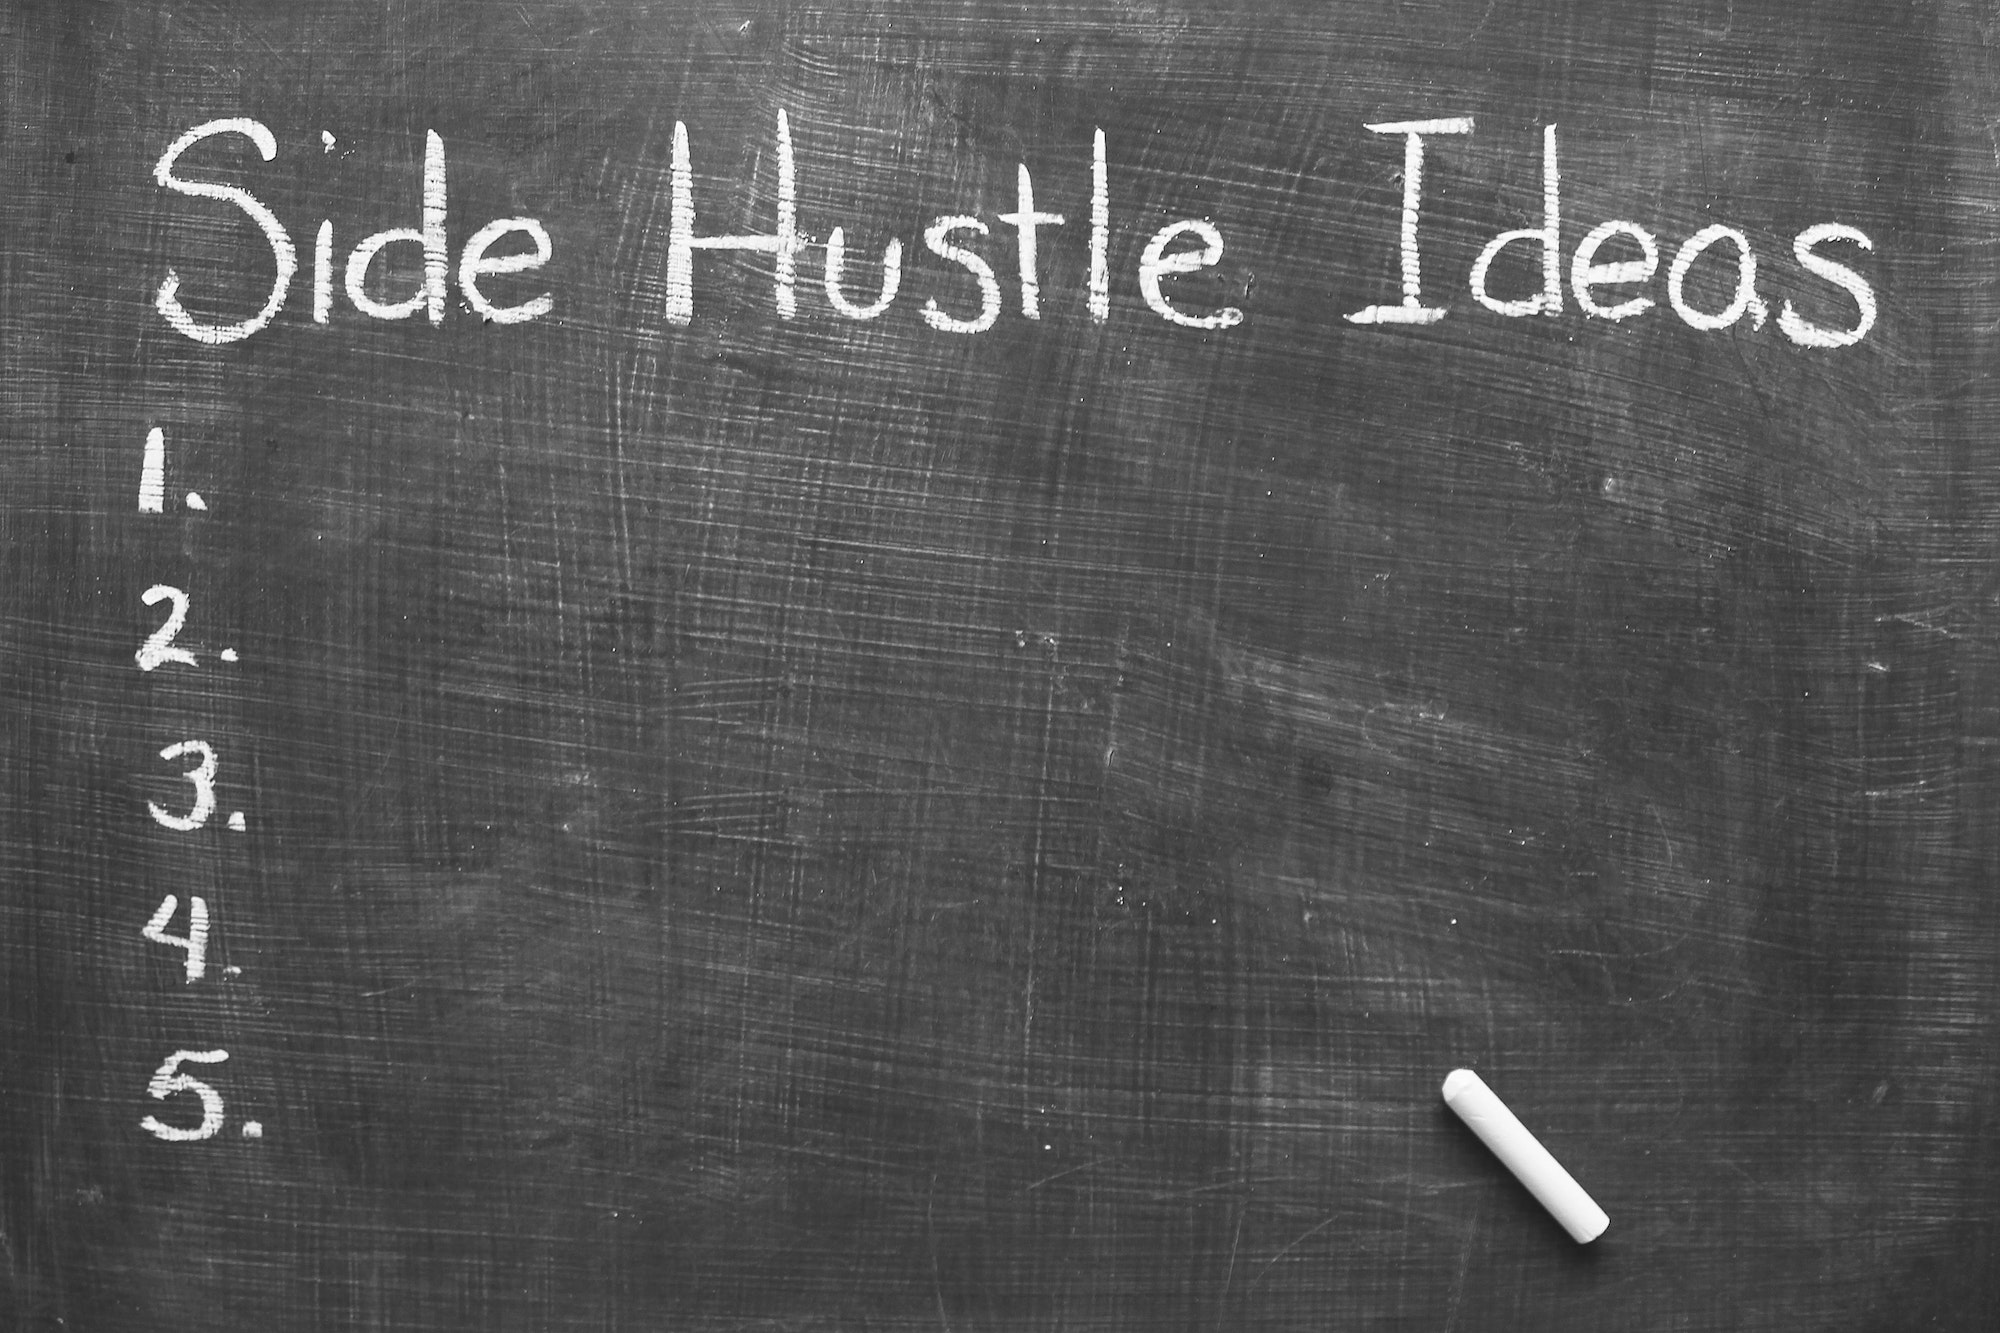 Side hustle ideas written on chalkboard